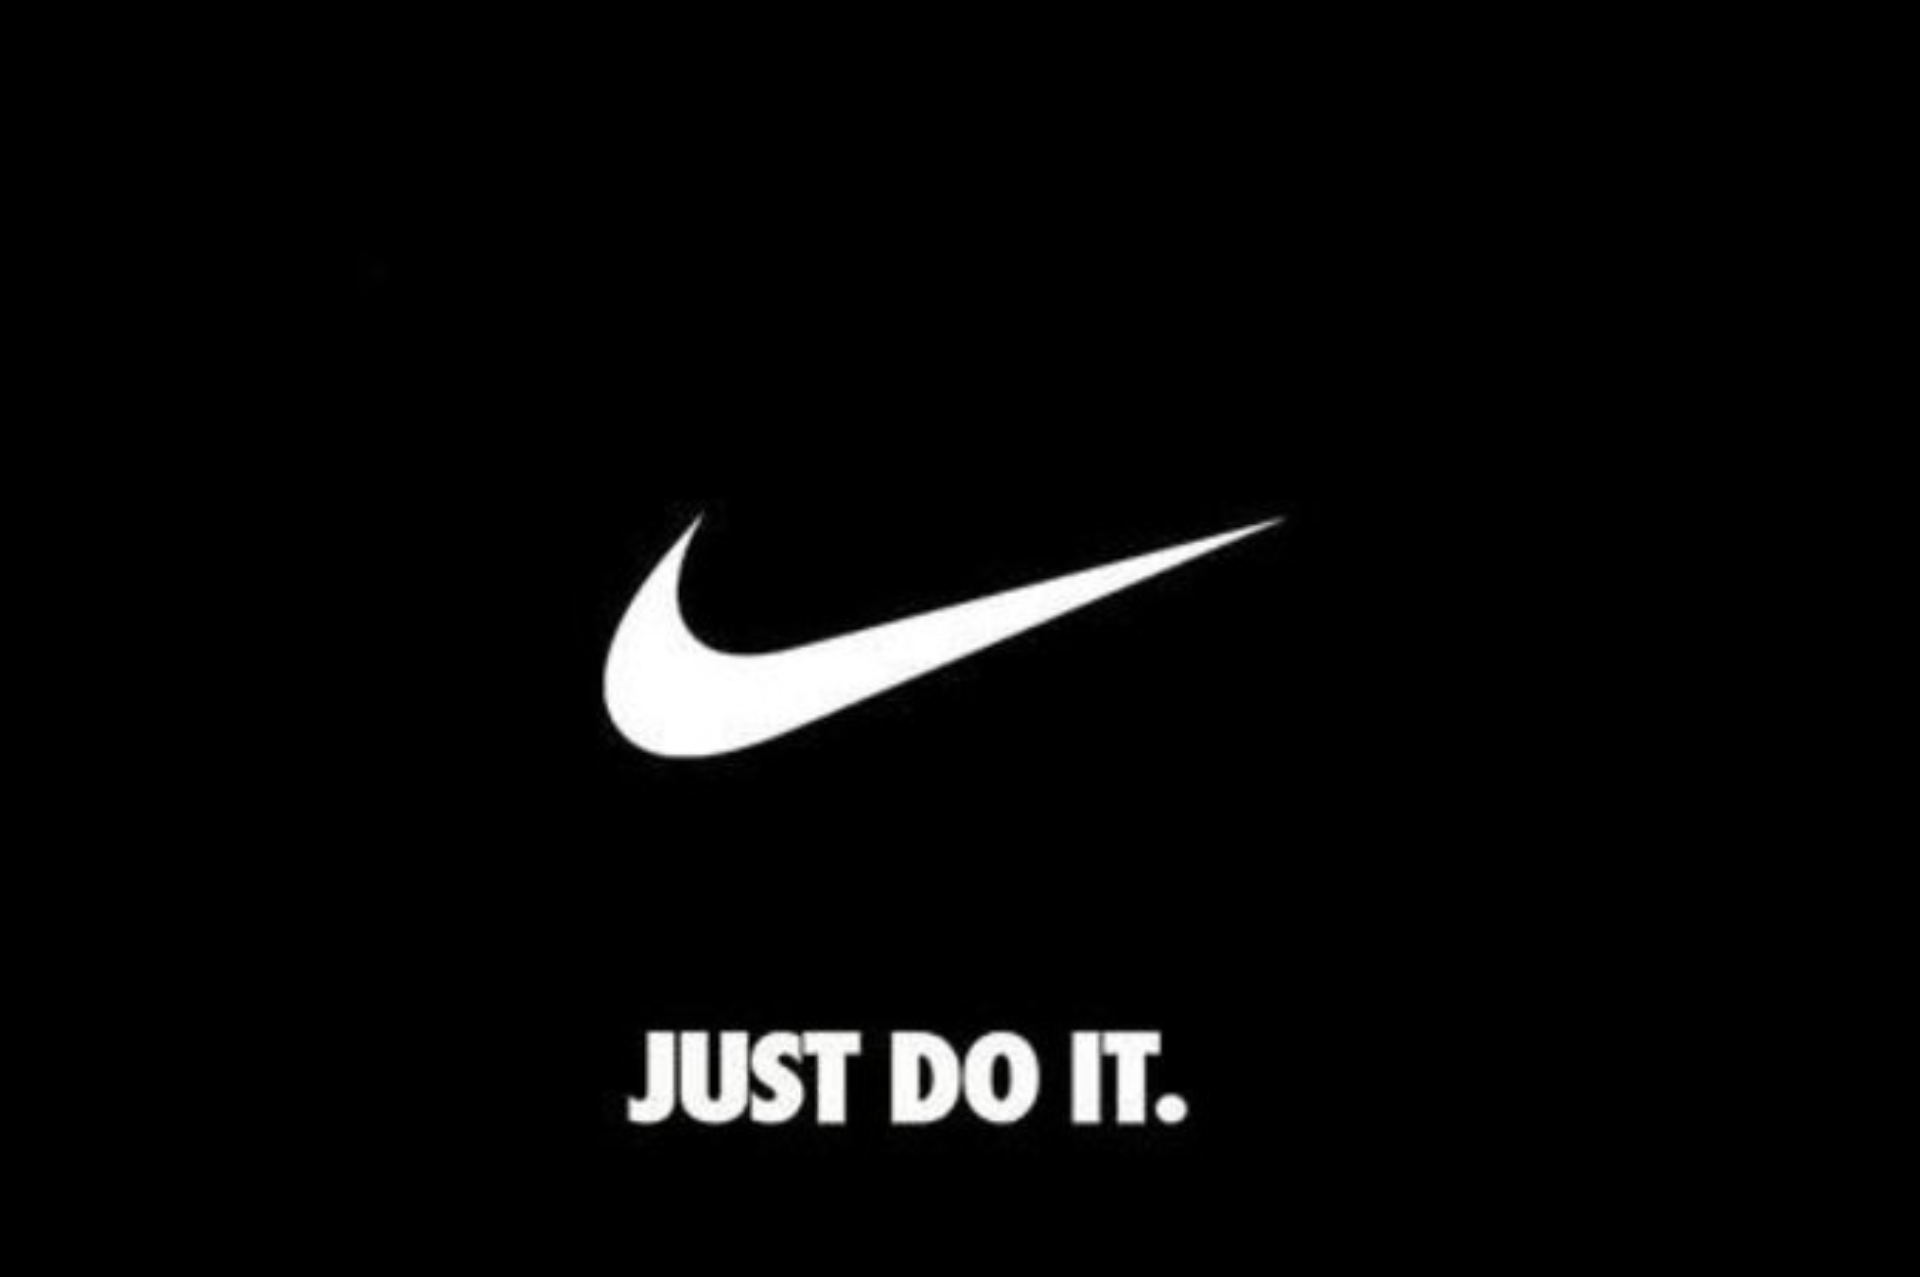 swoosh: La historia detr%C3%A1s del ic%C3%B3nico logotipo de Nike